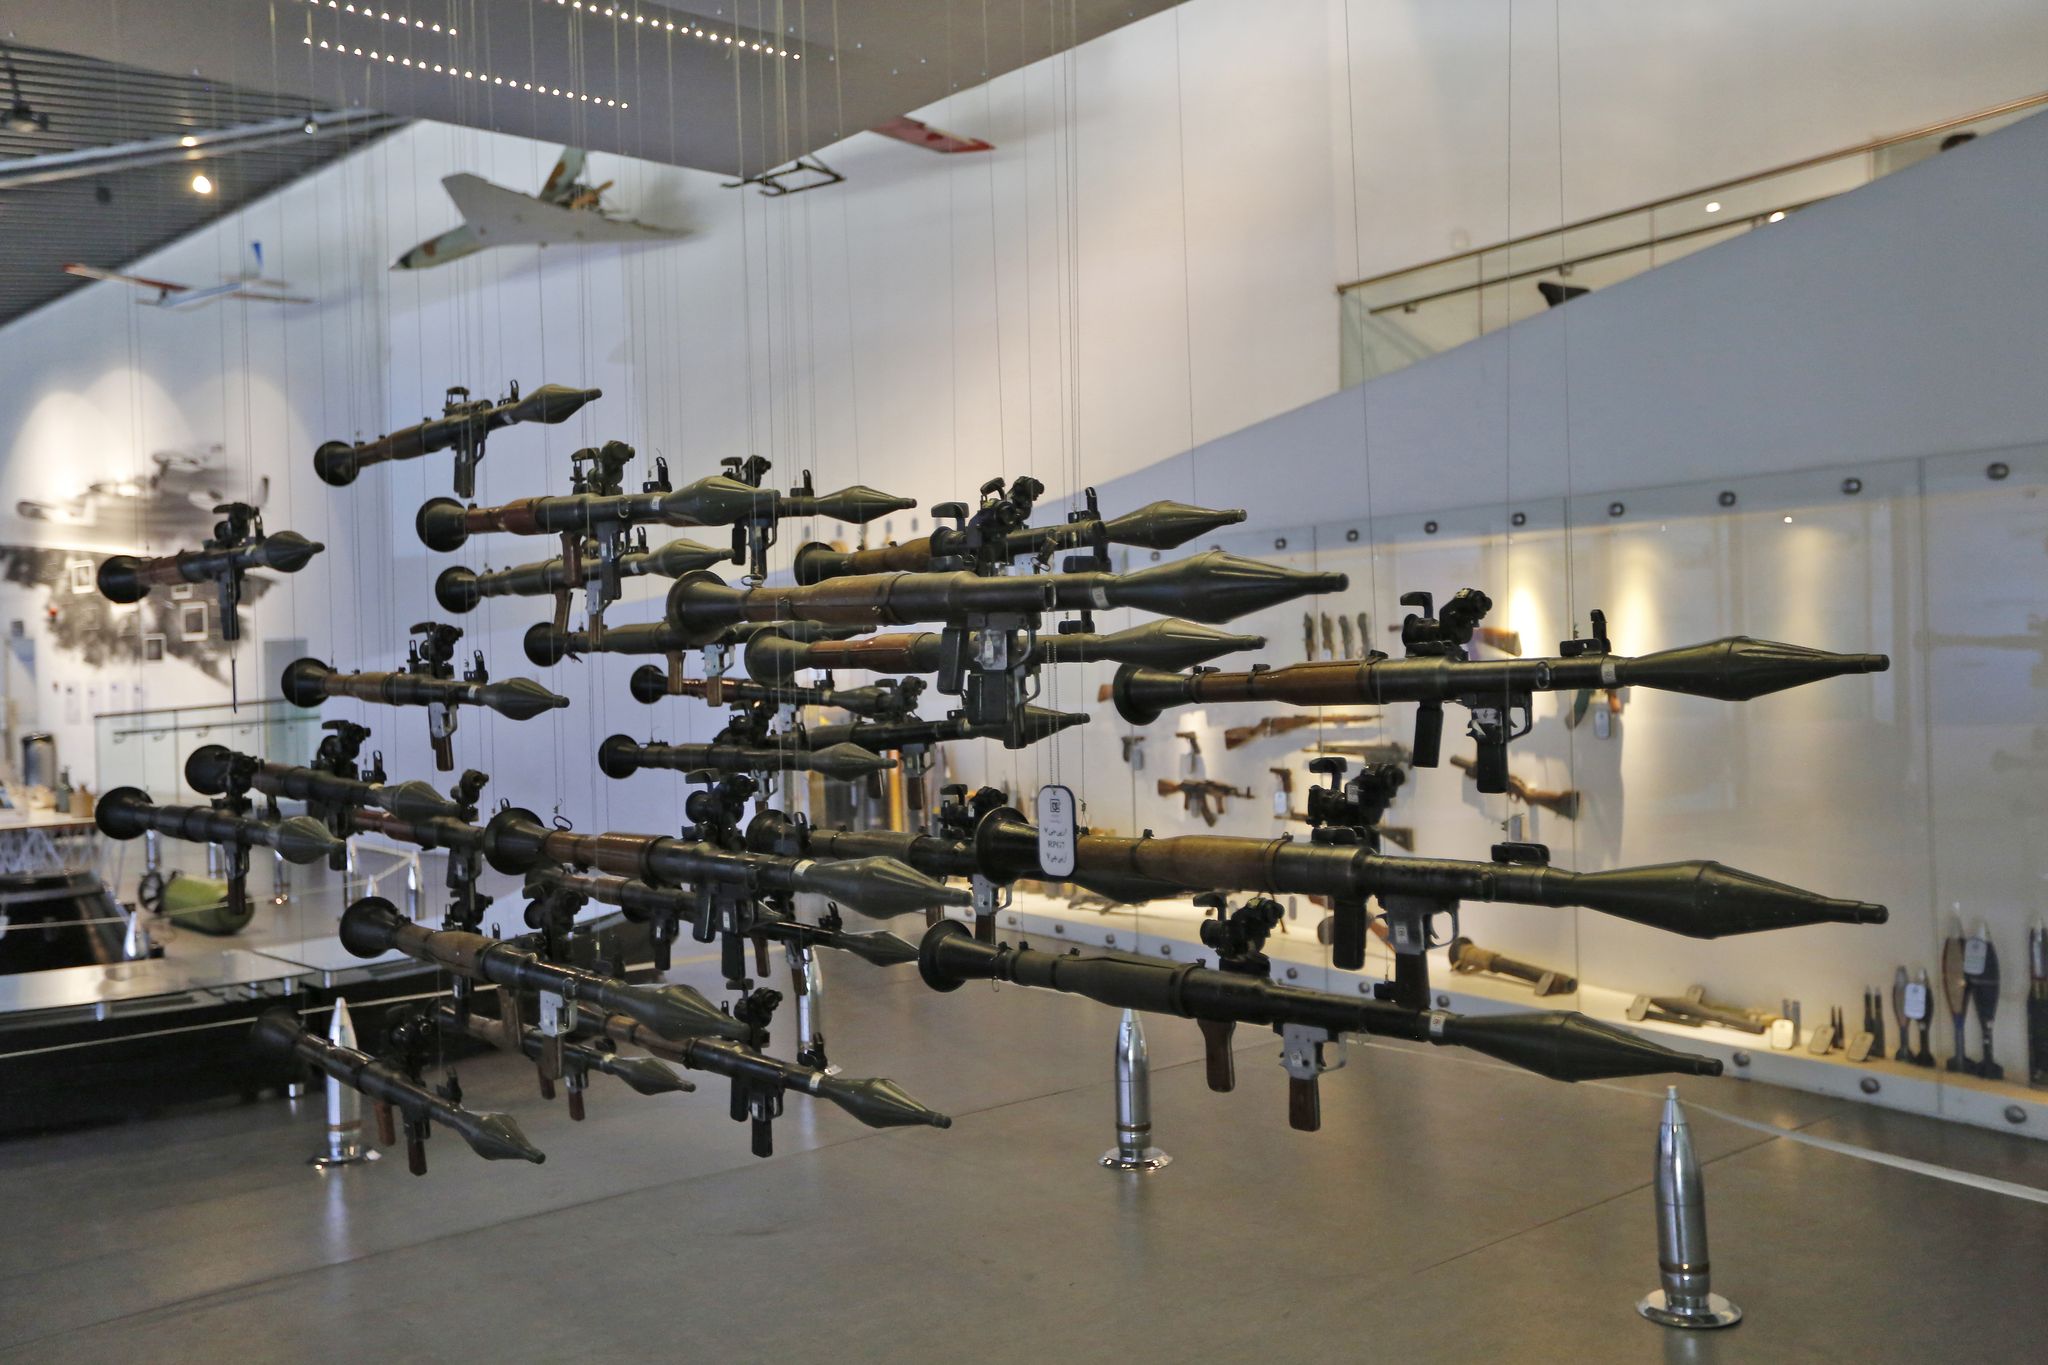 En Iran, un musée veut stimuler la "résistance" en souvenir du conflit avec l'Irak - L'Express